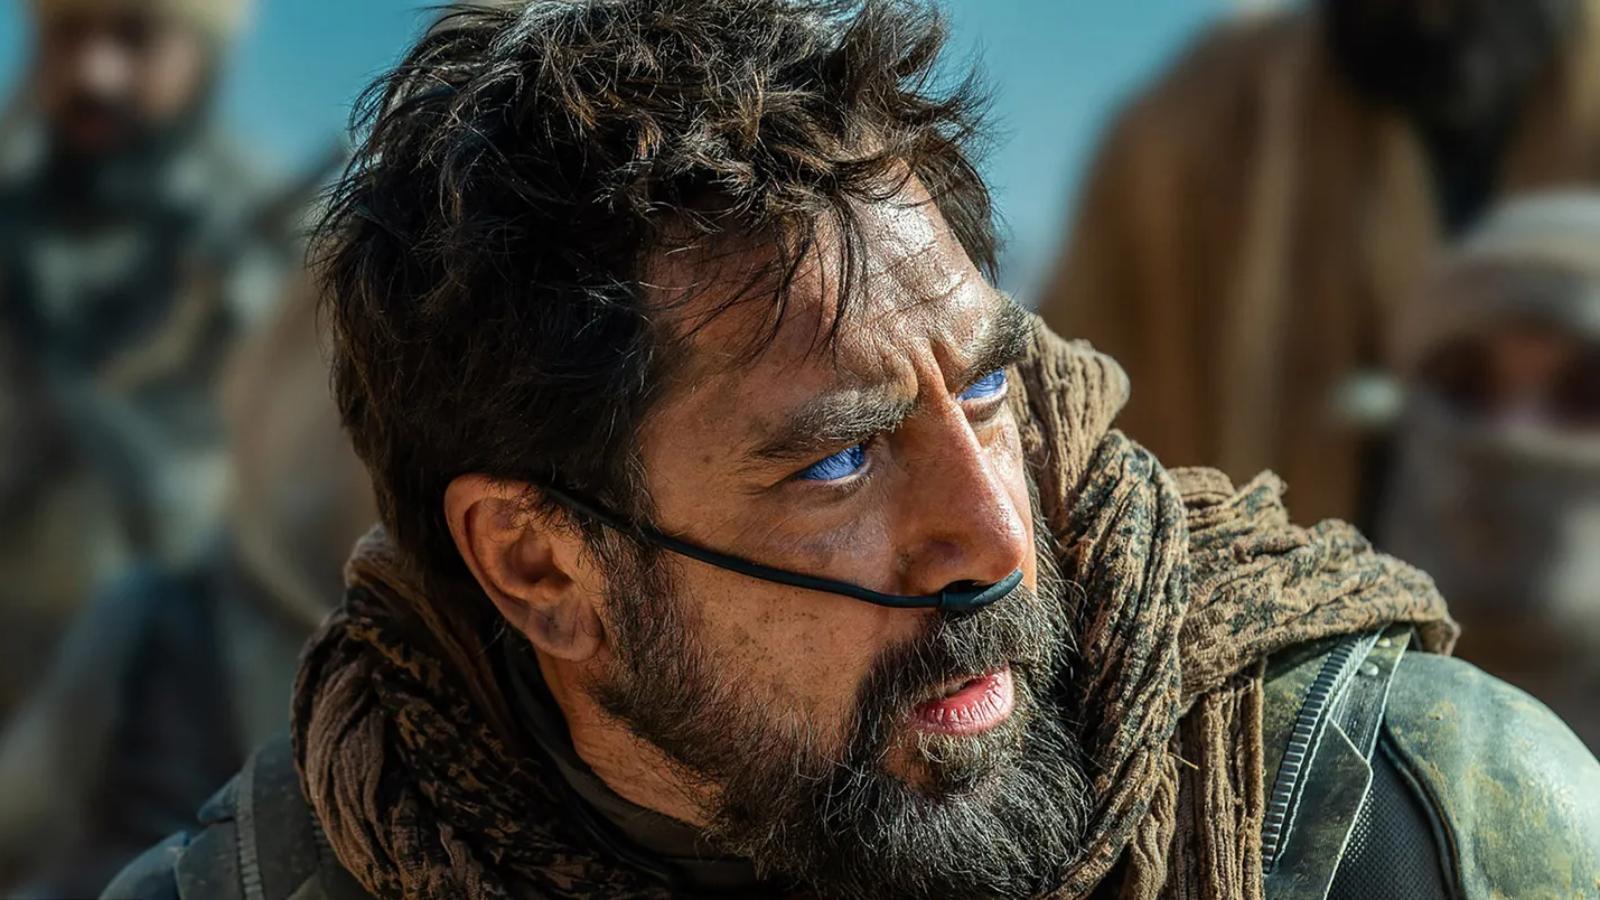 Javier Bardem in Dune 2 as Stilgar.